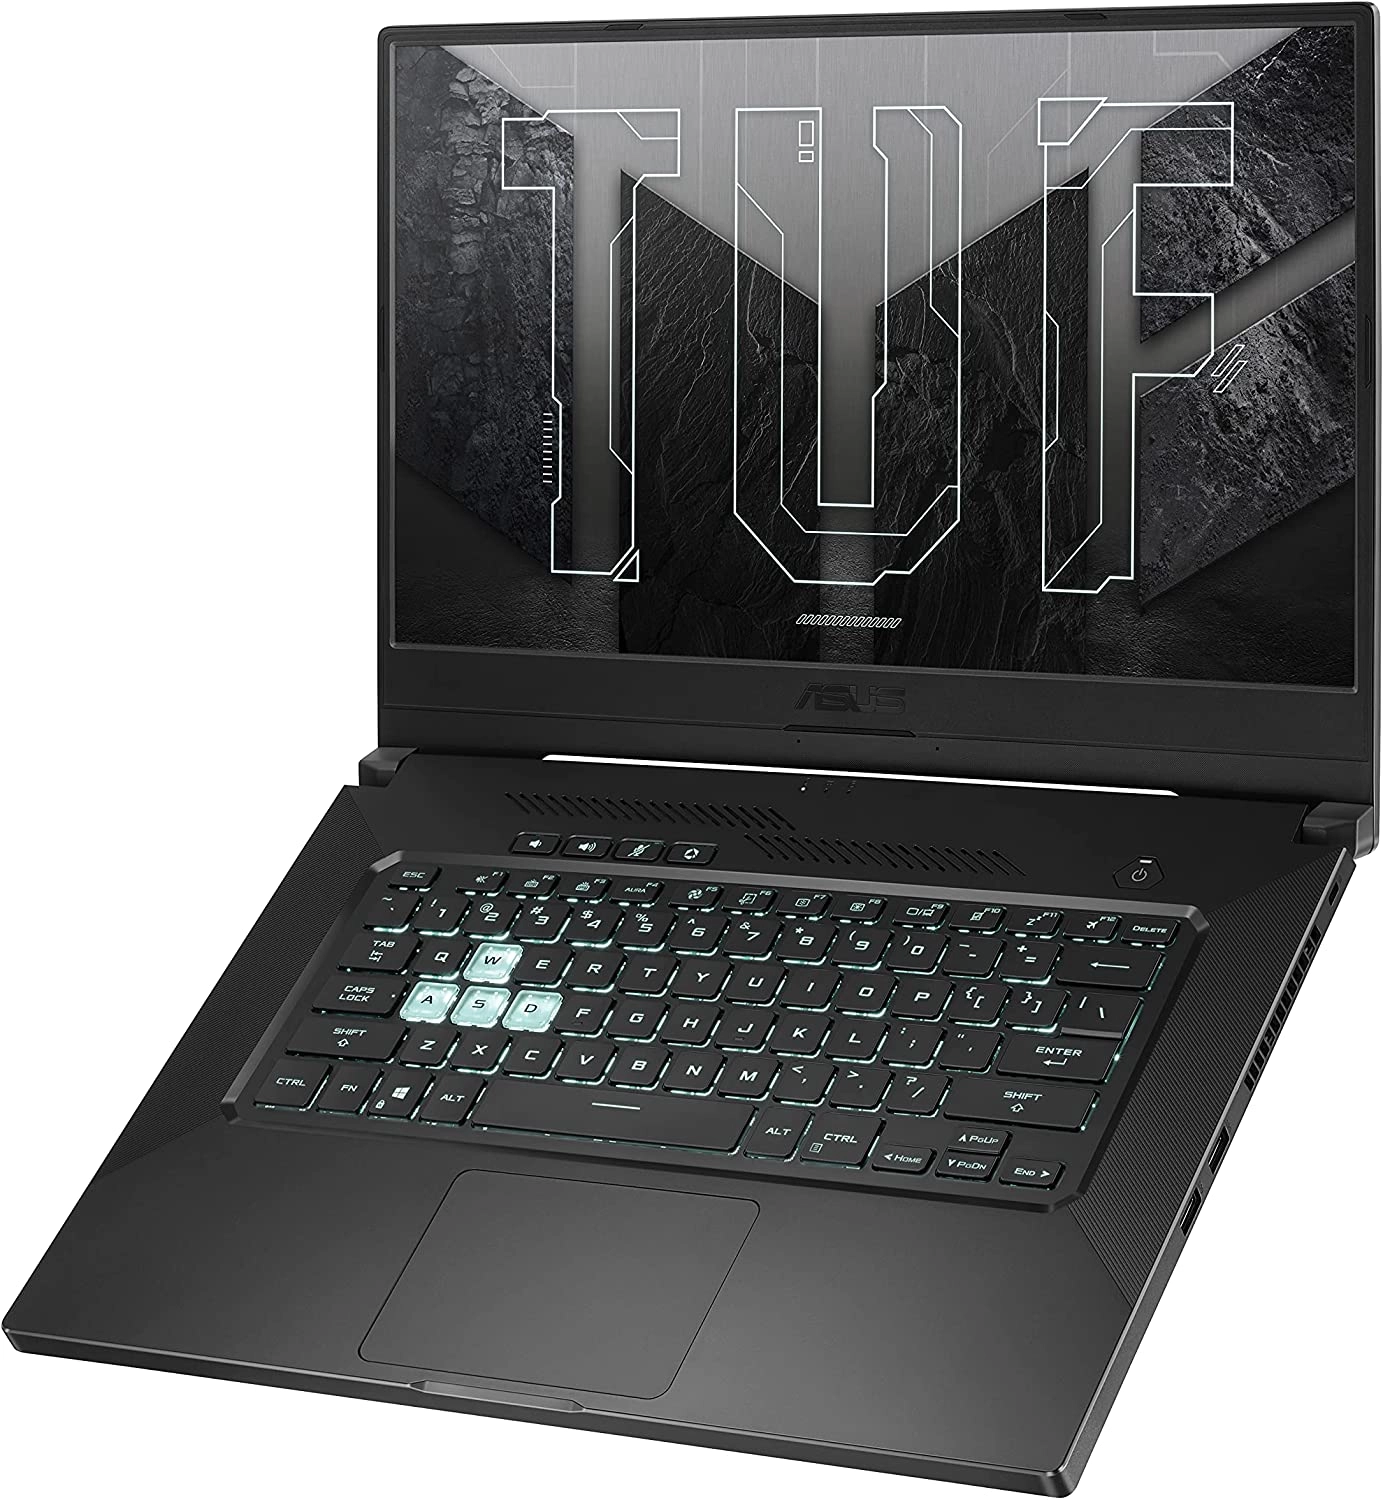 Asus TUF516PE laptop image